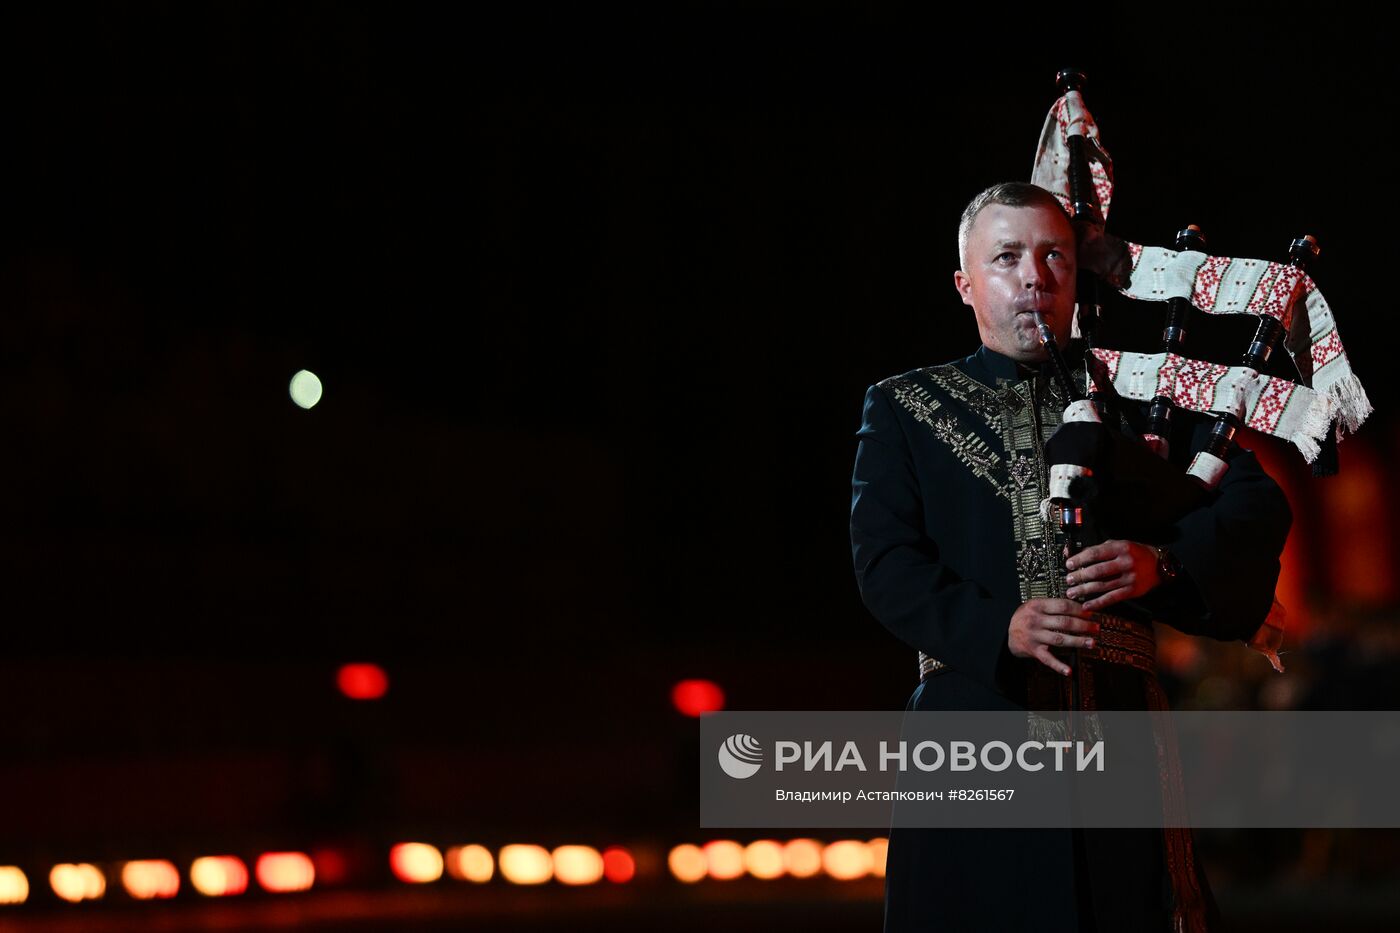 Церемония открытия Международного военно-музыкального фестиваля "Спасская башня" 